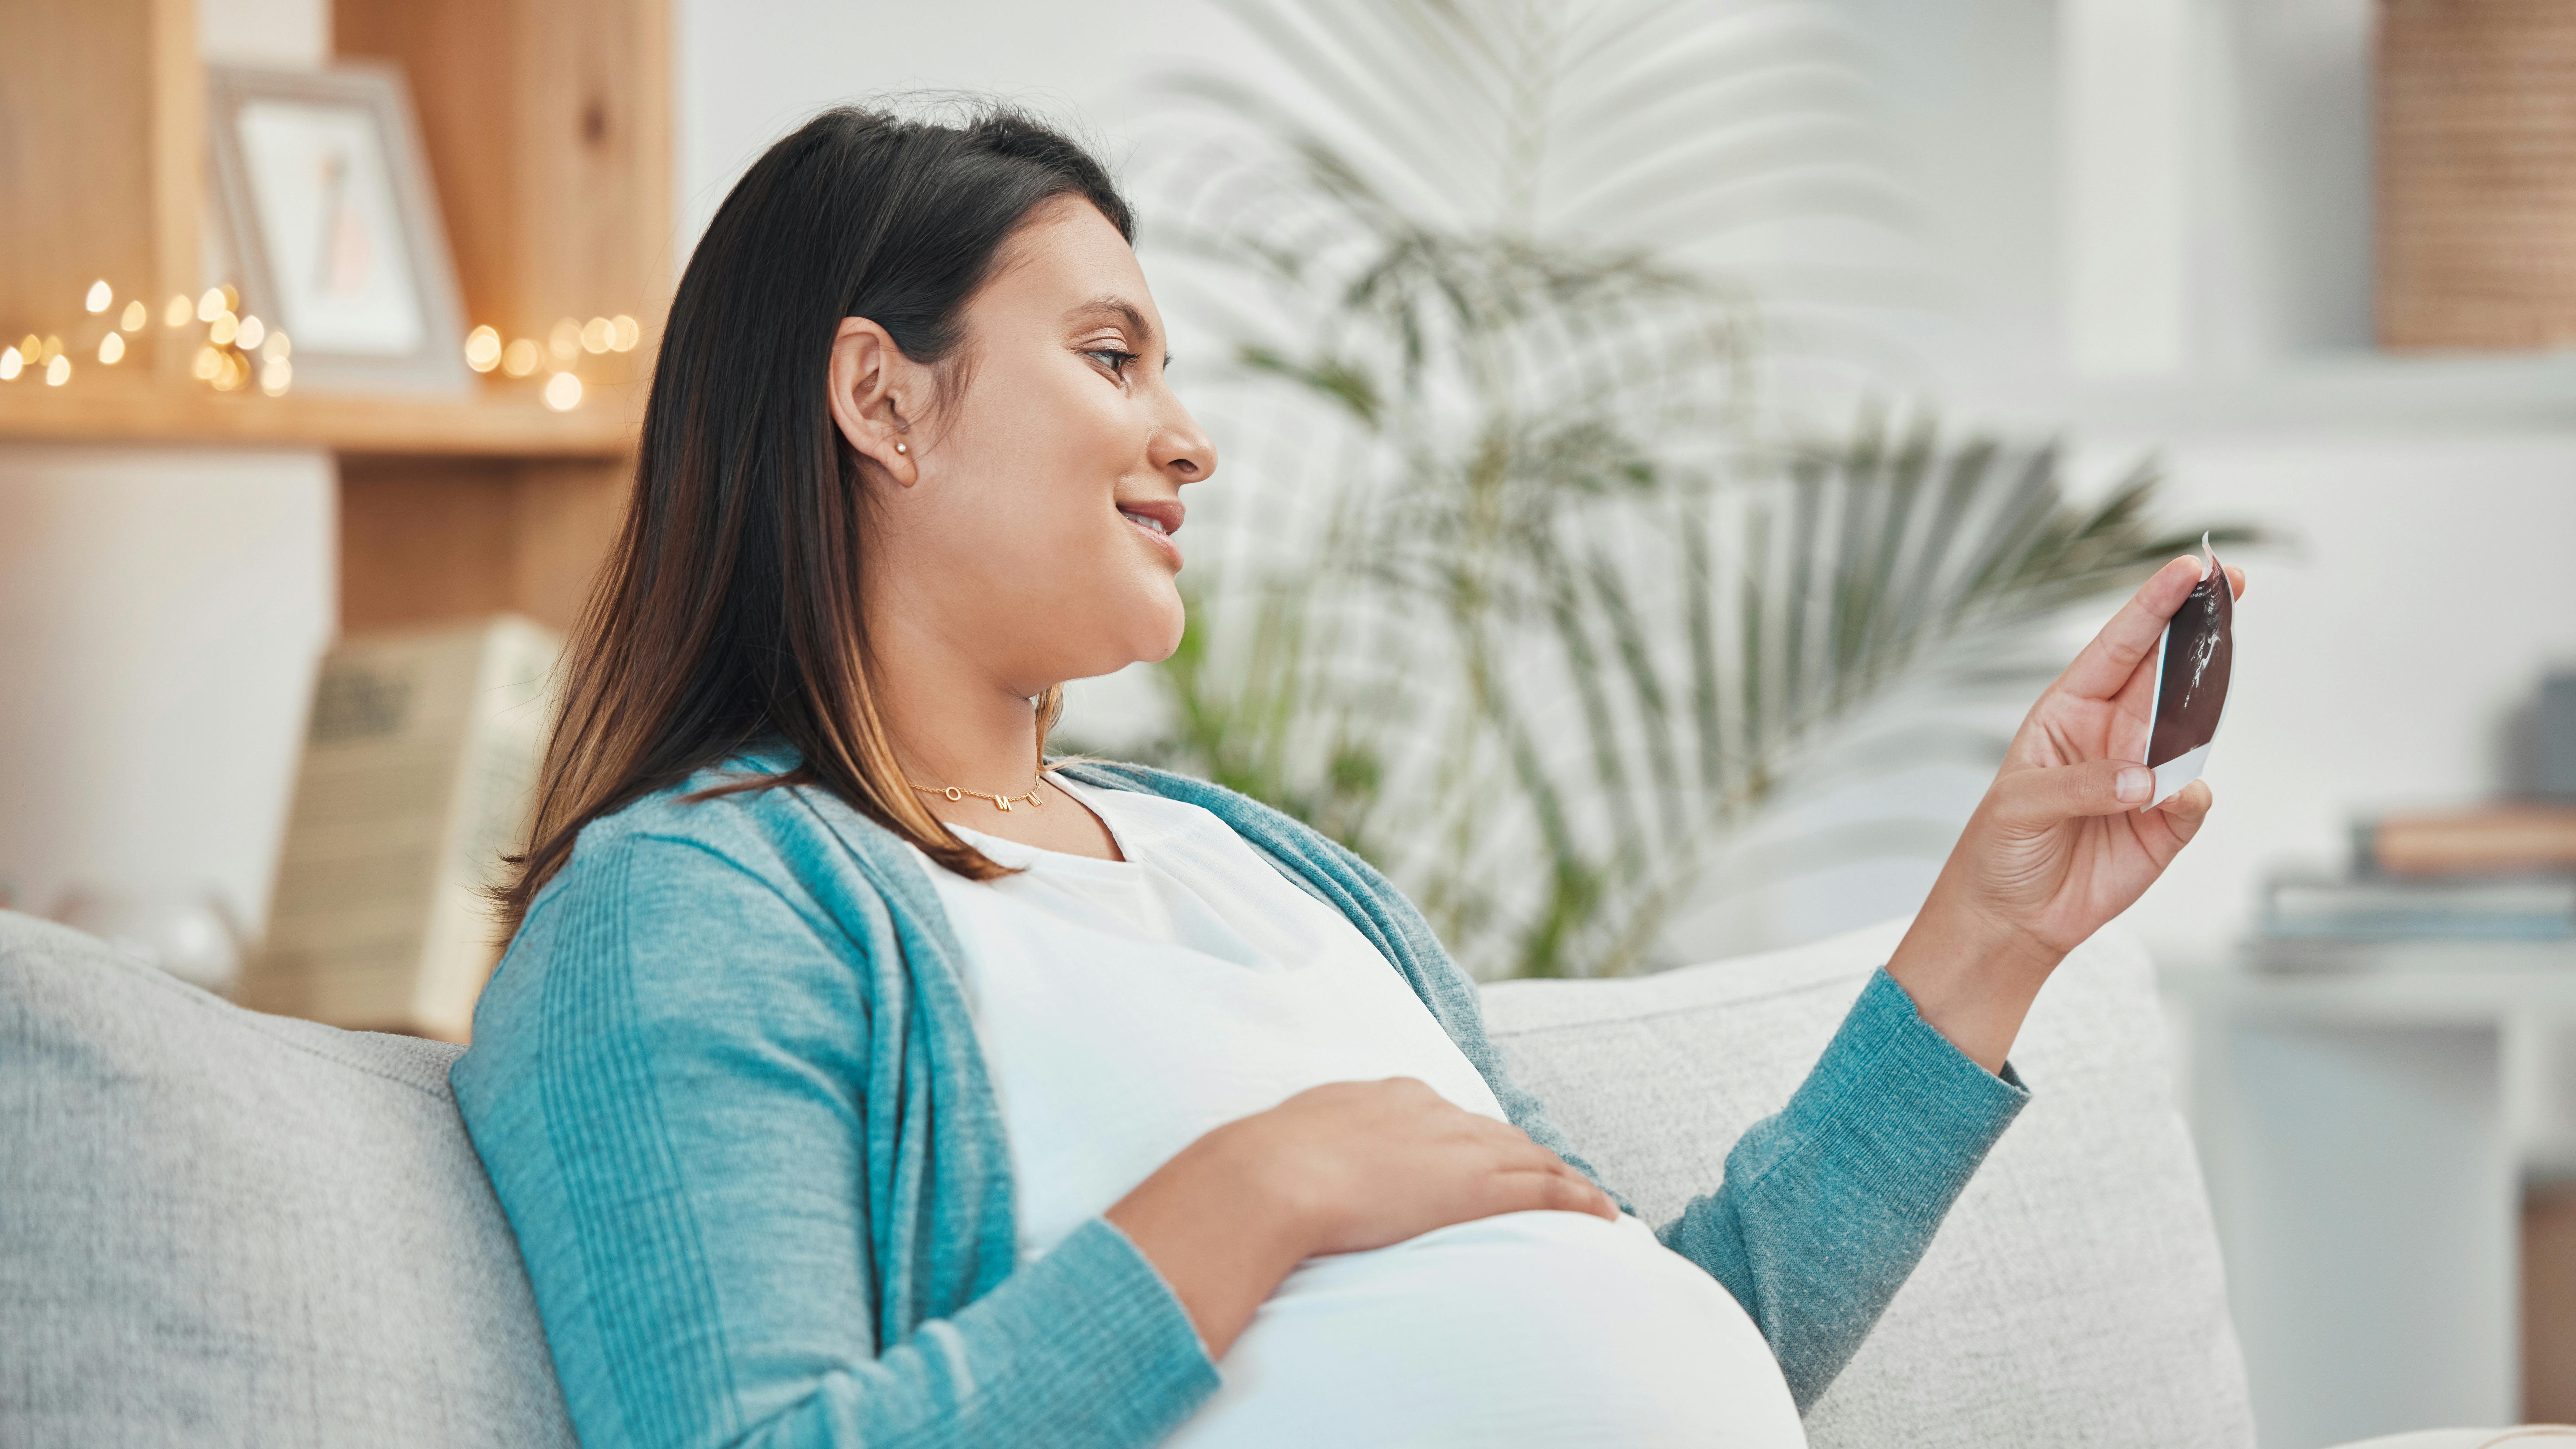 Midaldrende gravid kvinder ser på scanningsbillede af barnet